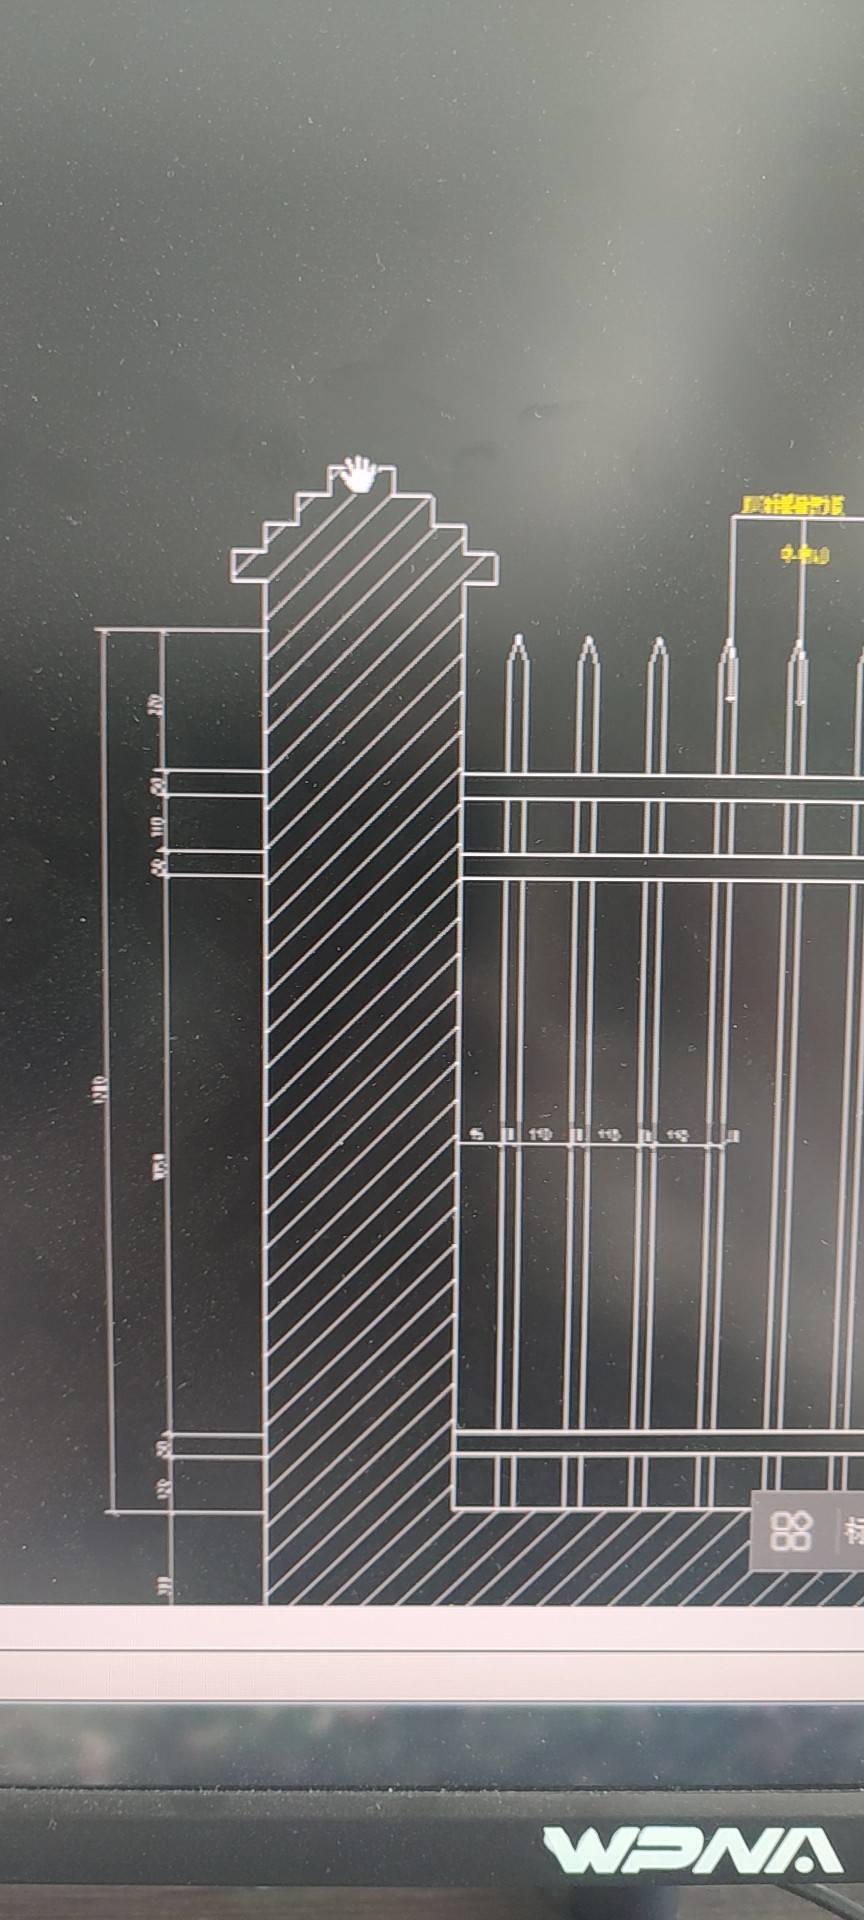 透视围墙长54.25米，砖柱间距3.2米，怎么计算这个砖柱个数？